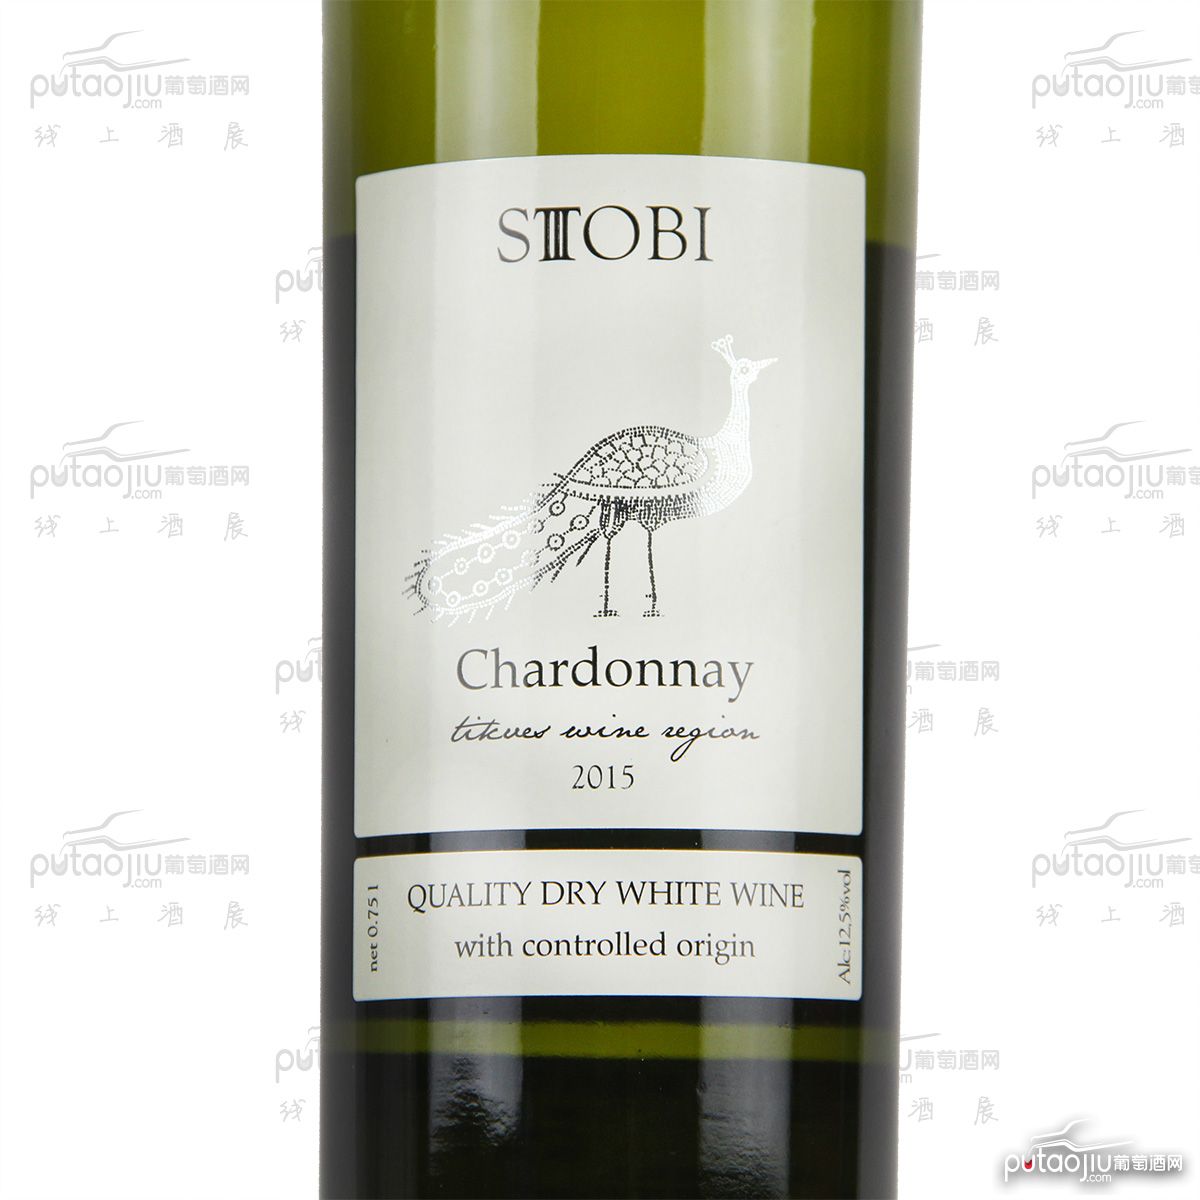 STOBI斯多比酒庄(Chardonnay)霞多丽A级干白葡萄酒小众国家原装进口北马其顿红酒